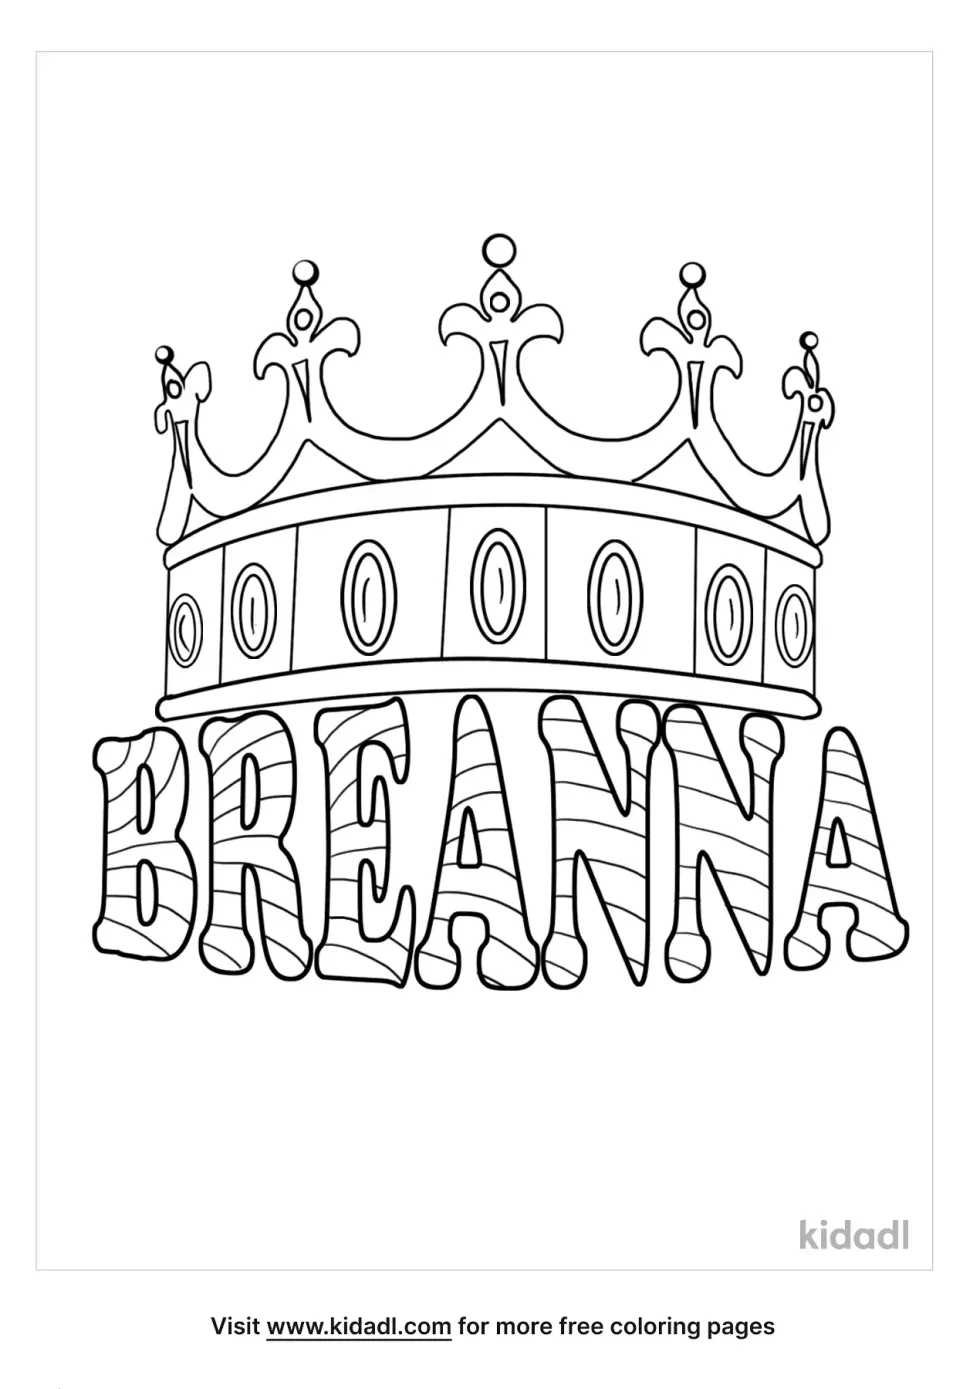 Breanna Name